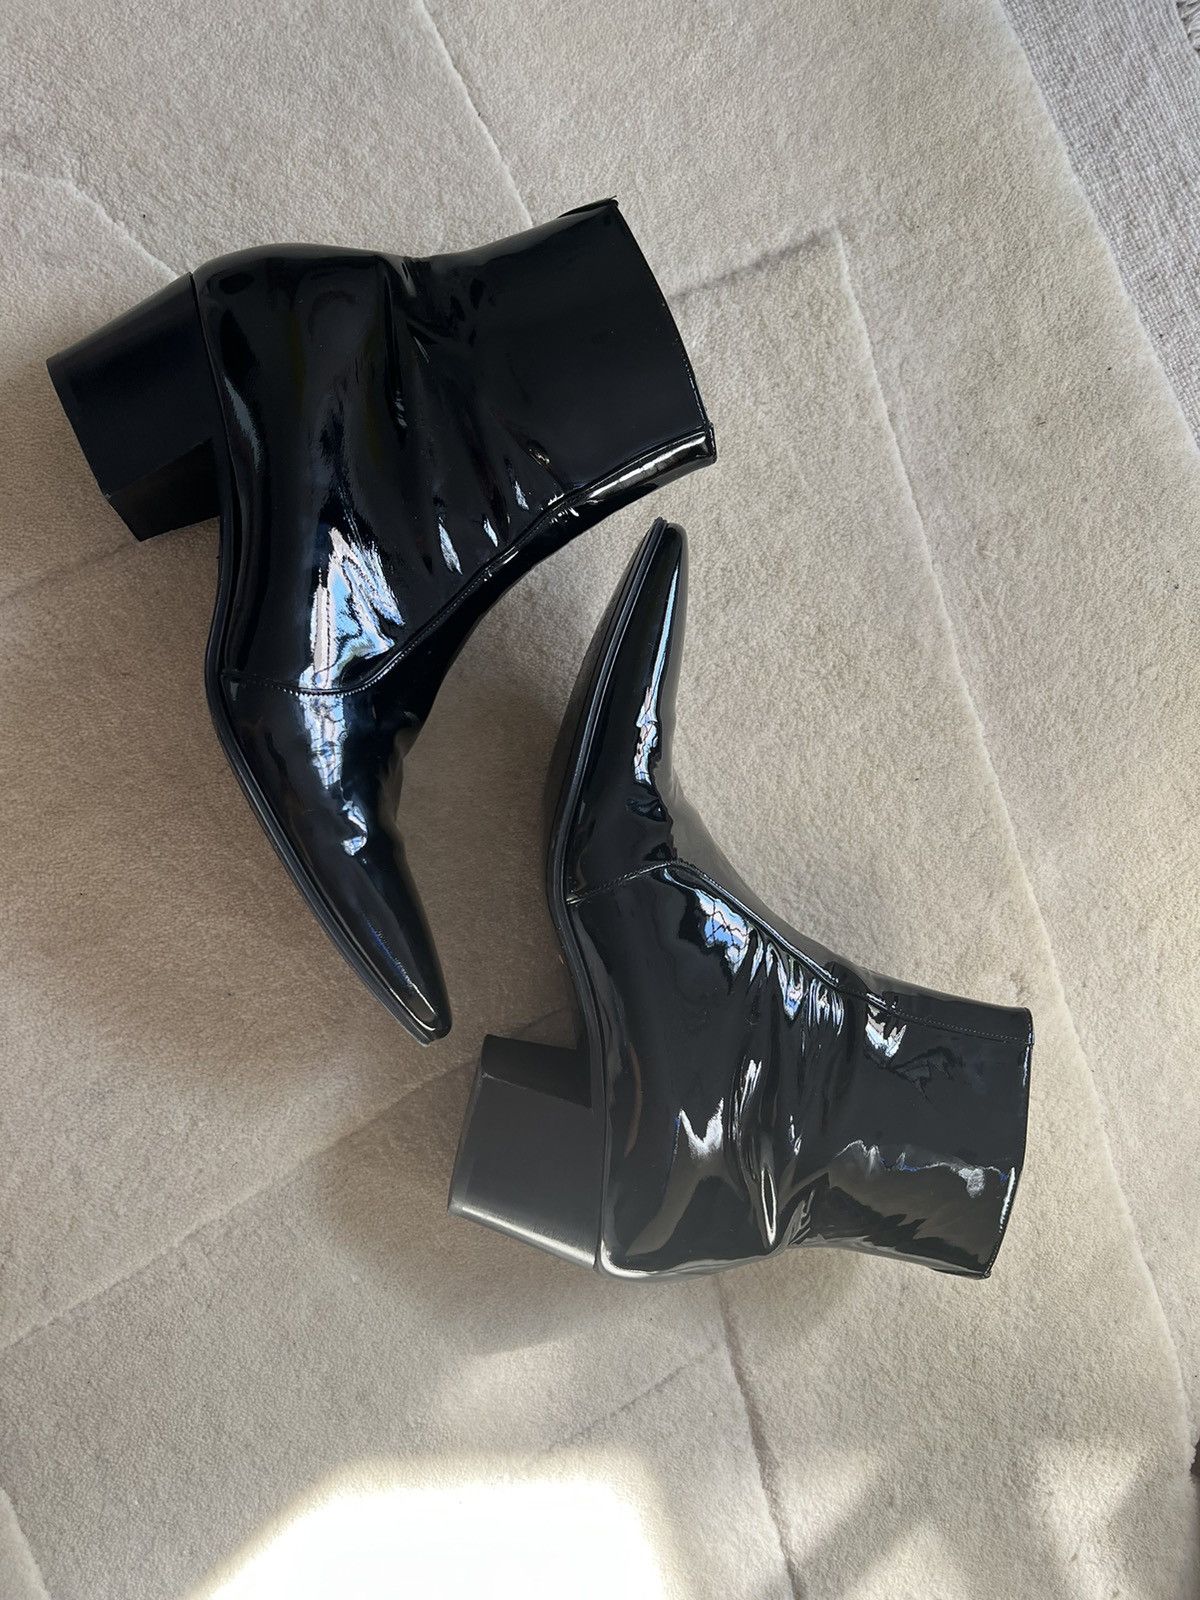 Saint Laurent Wyatt Patent-leather Boots - Men - Black Boots - EU 42